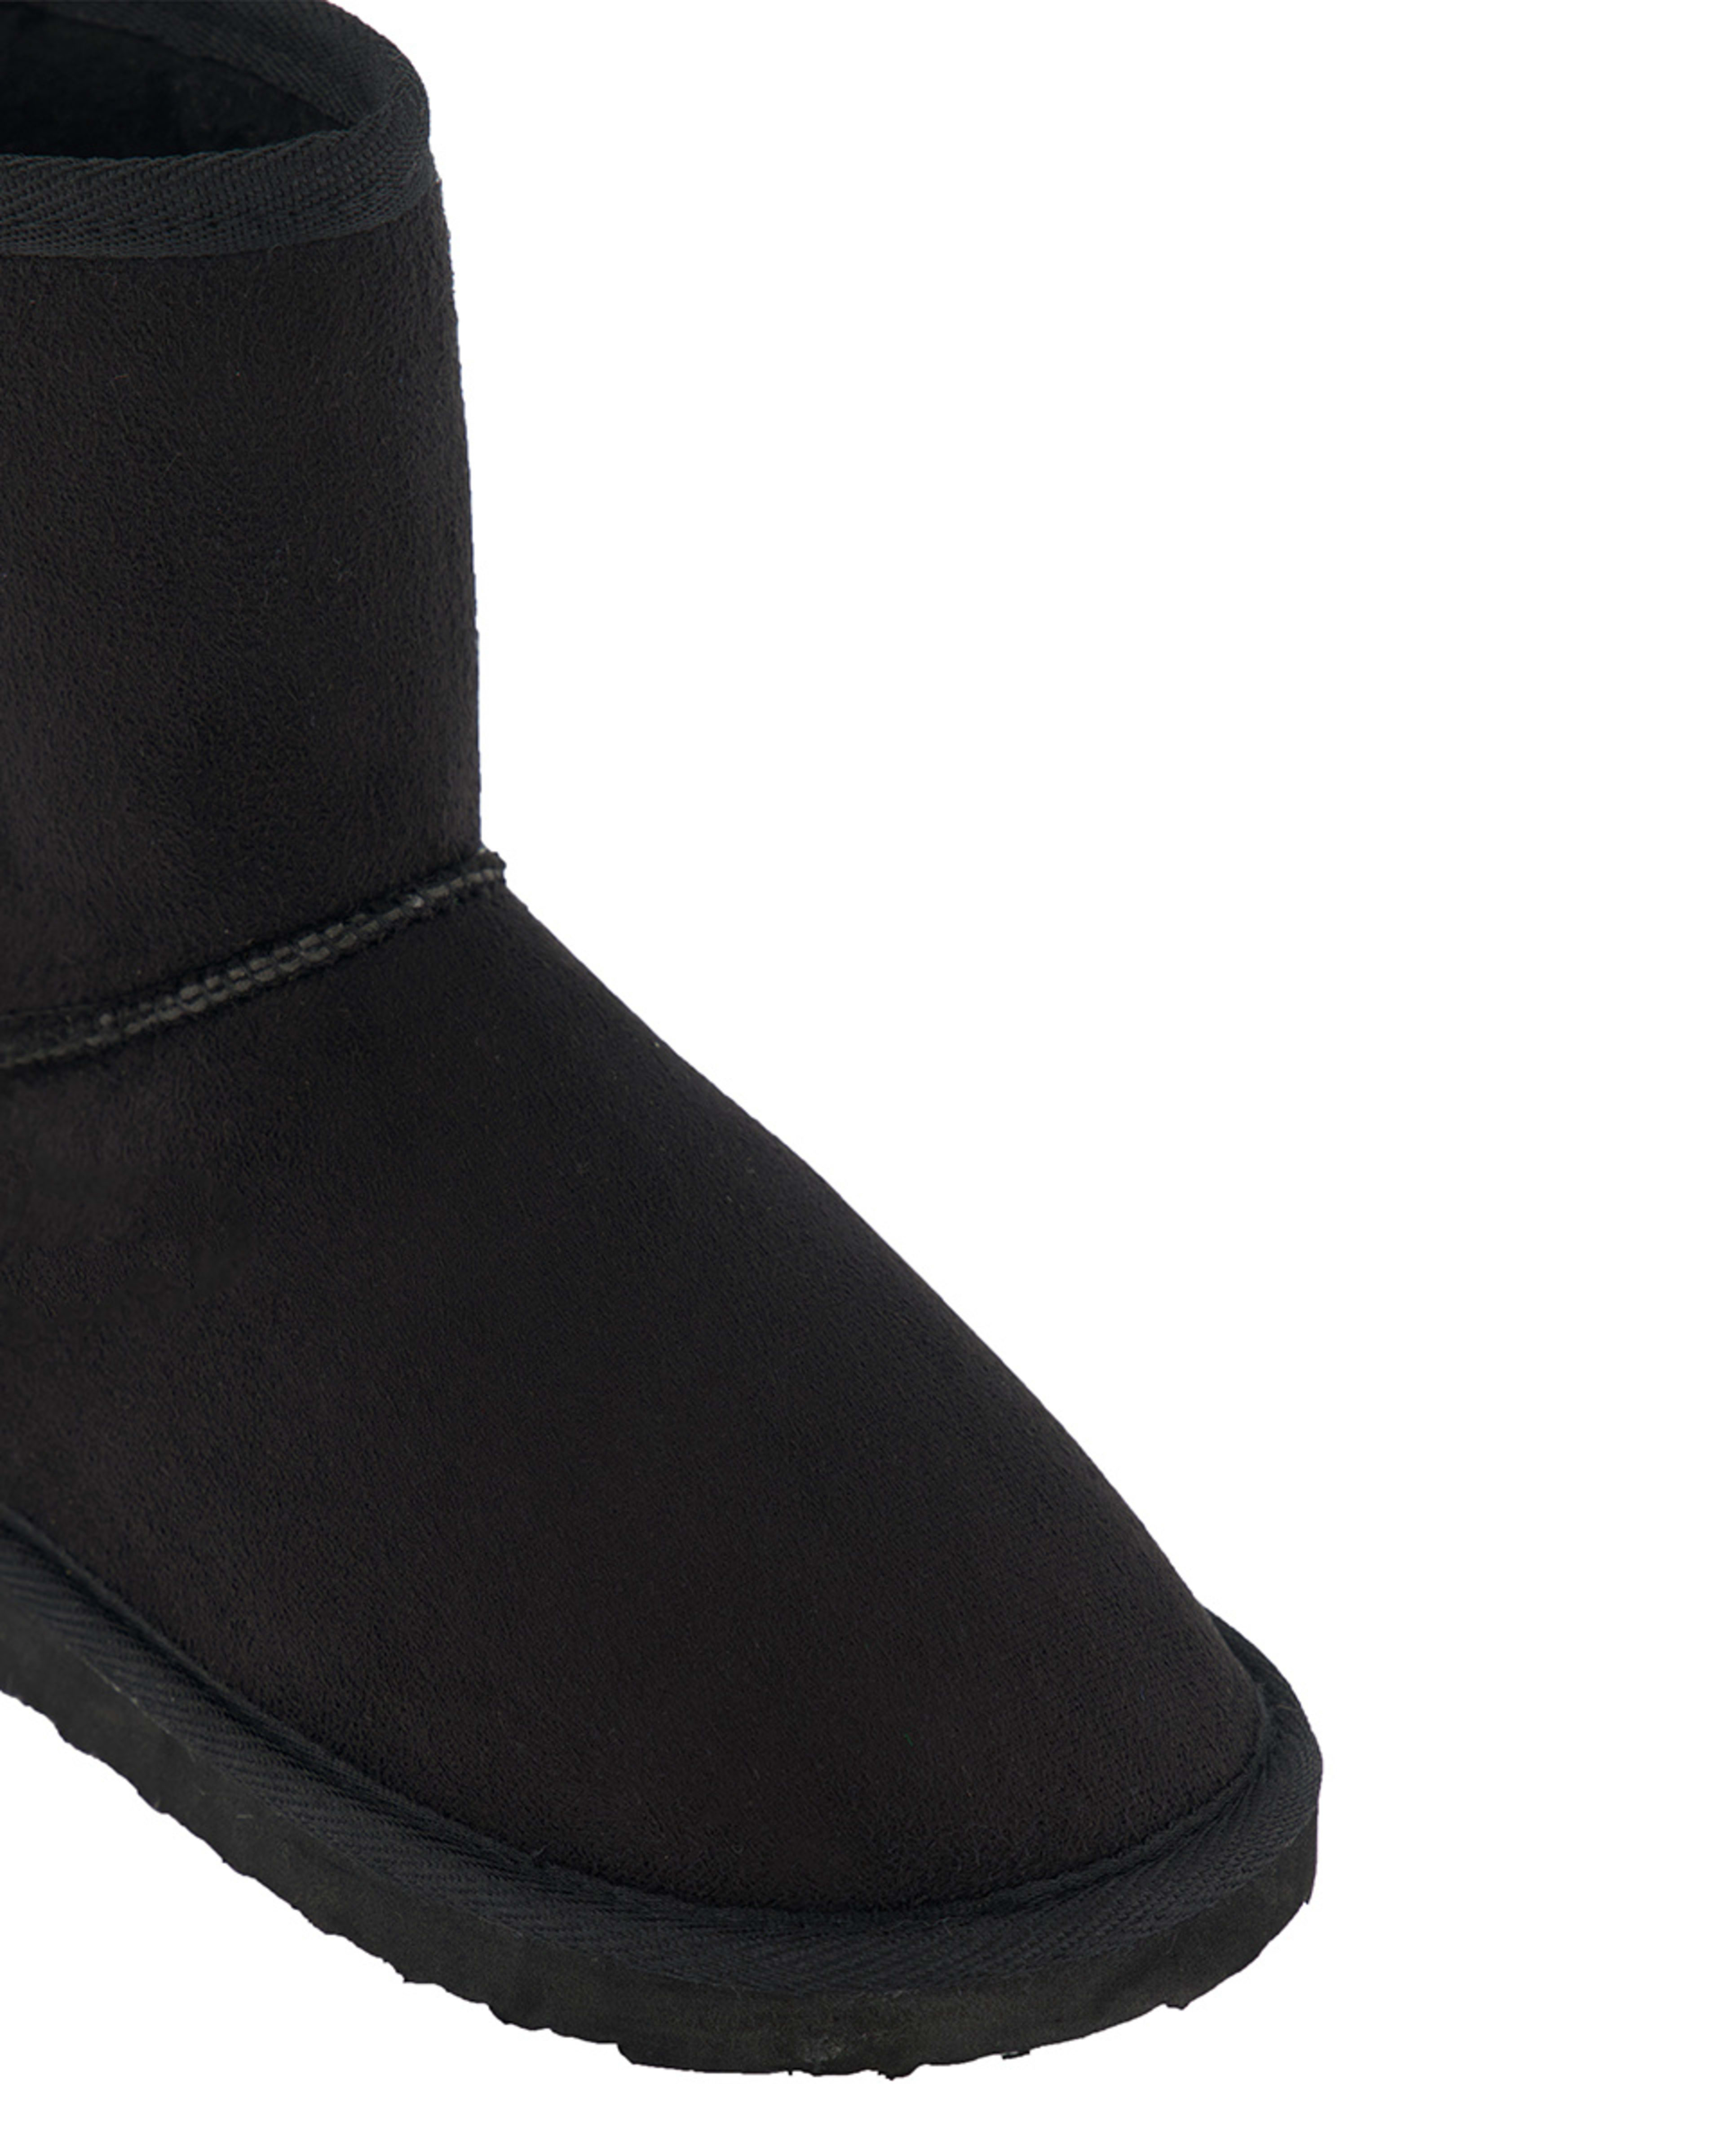 Senior Slipper Boots - Kmart